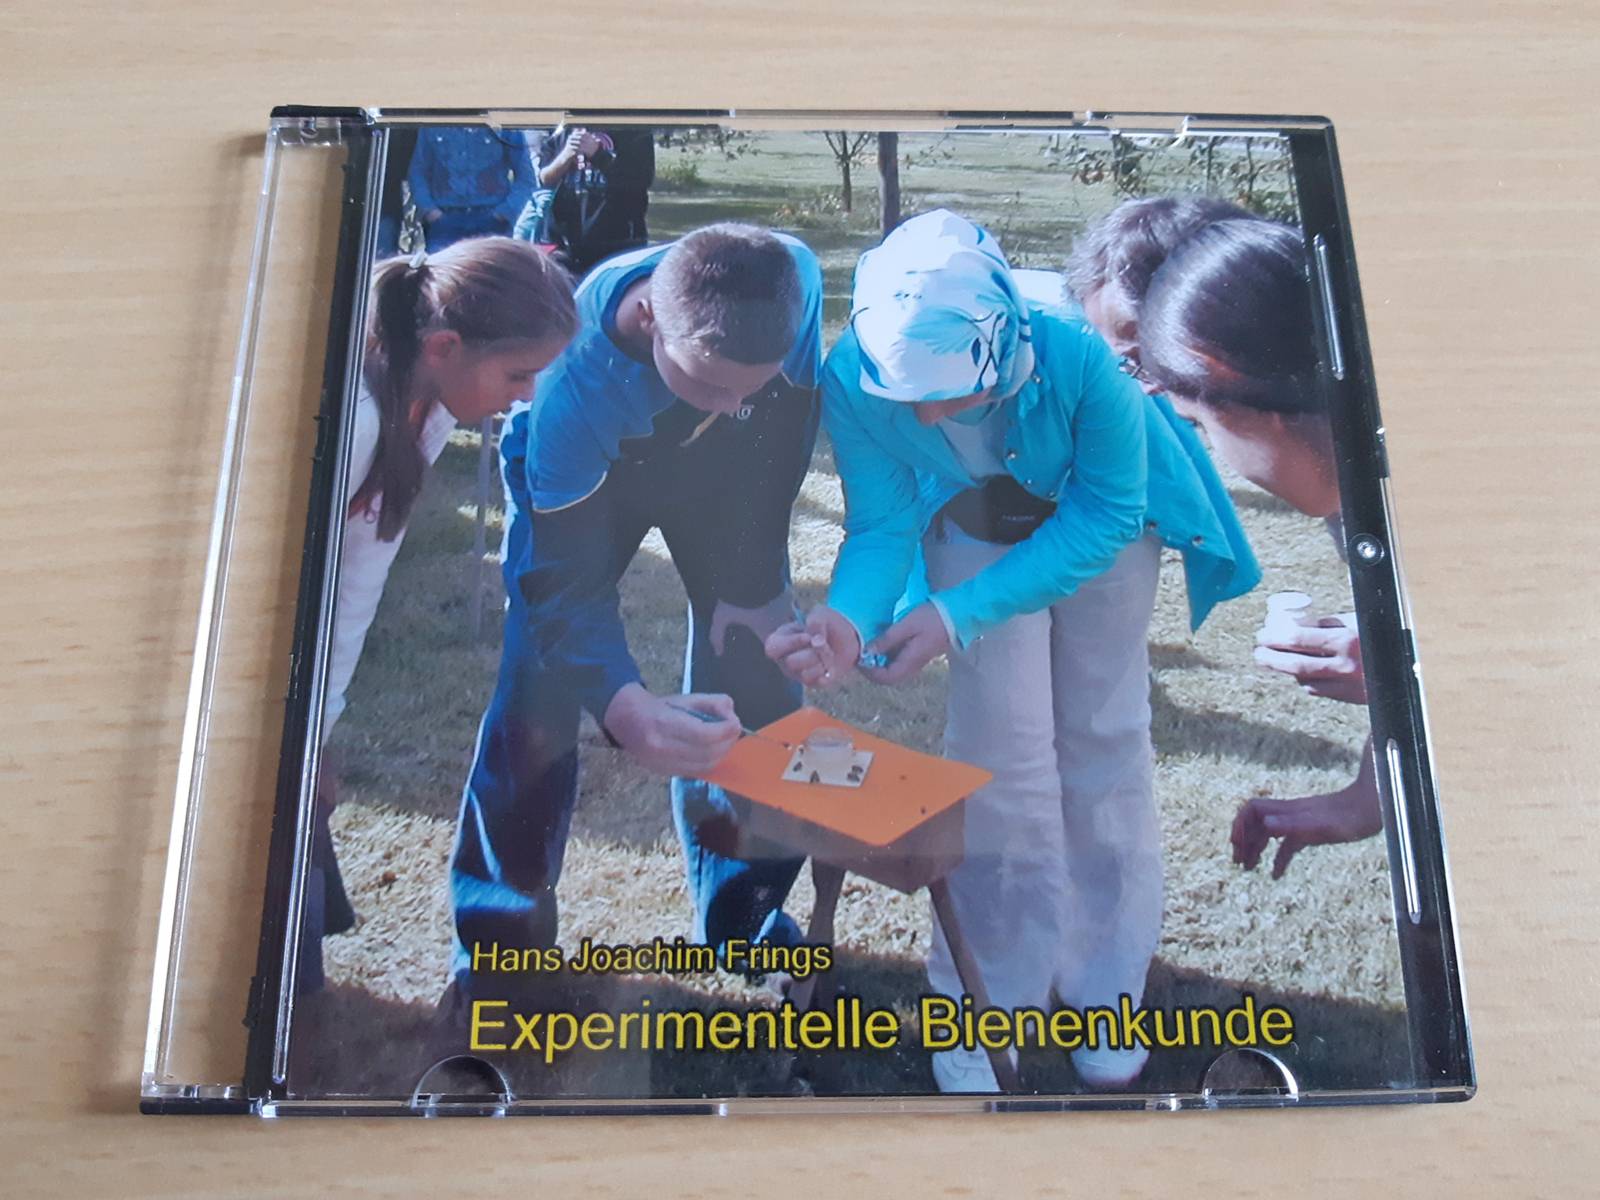 Eine CD-Hülle mit der Aufschrift "Experimentelle Bienenkunde" liegt auf einem Schreibtisch.